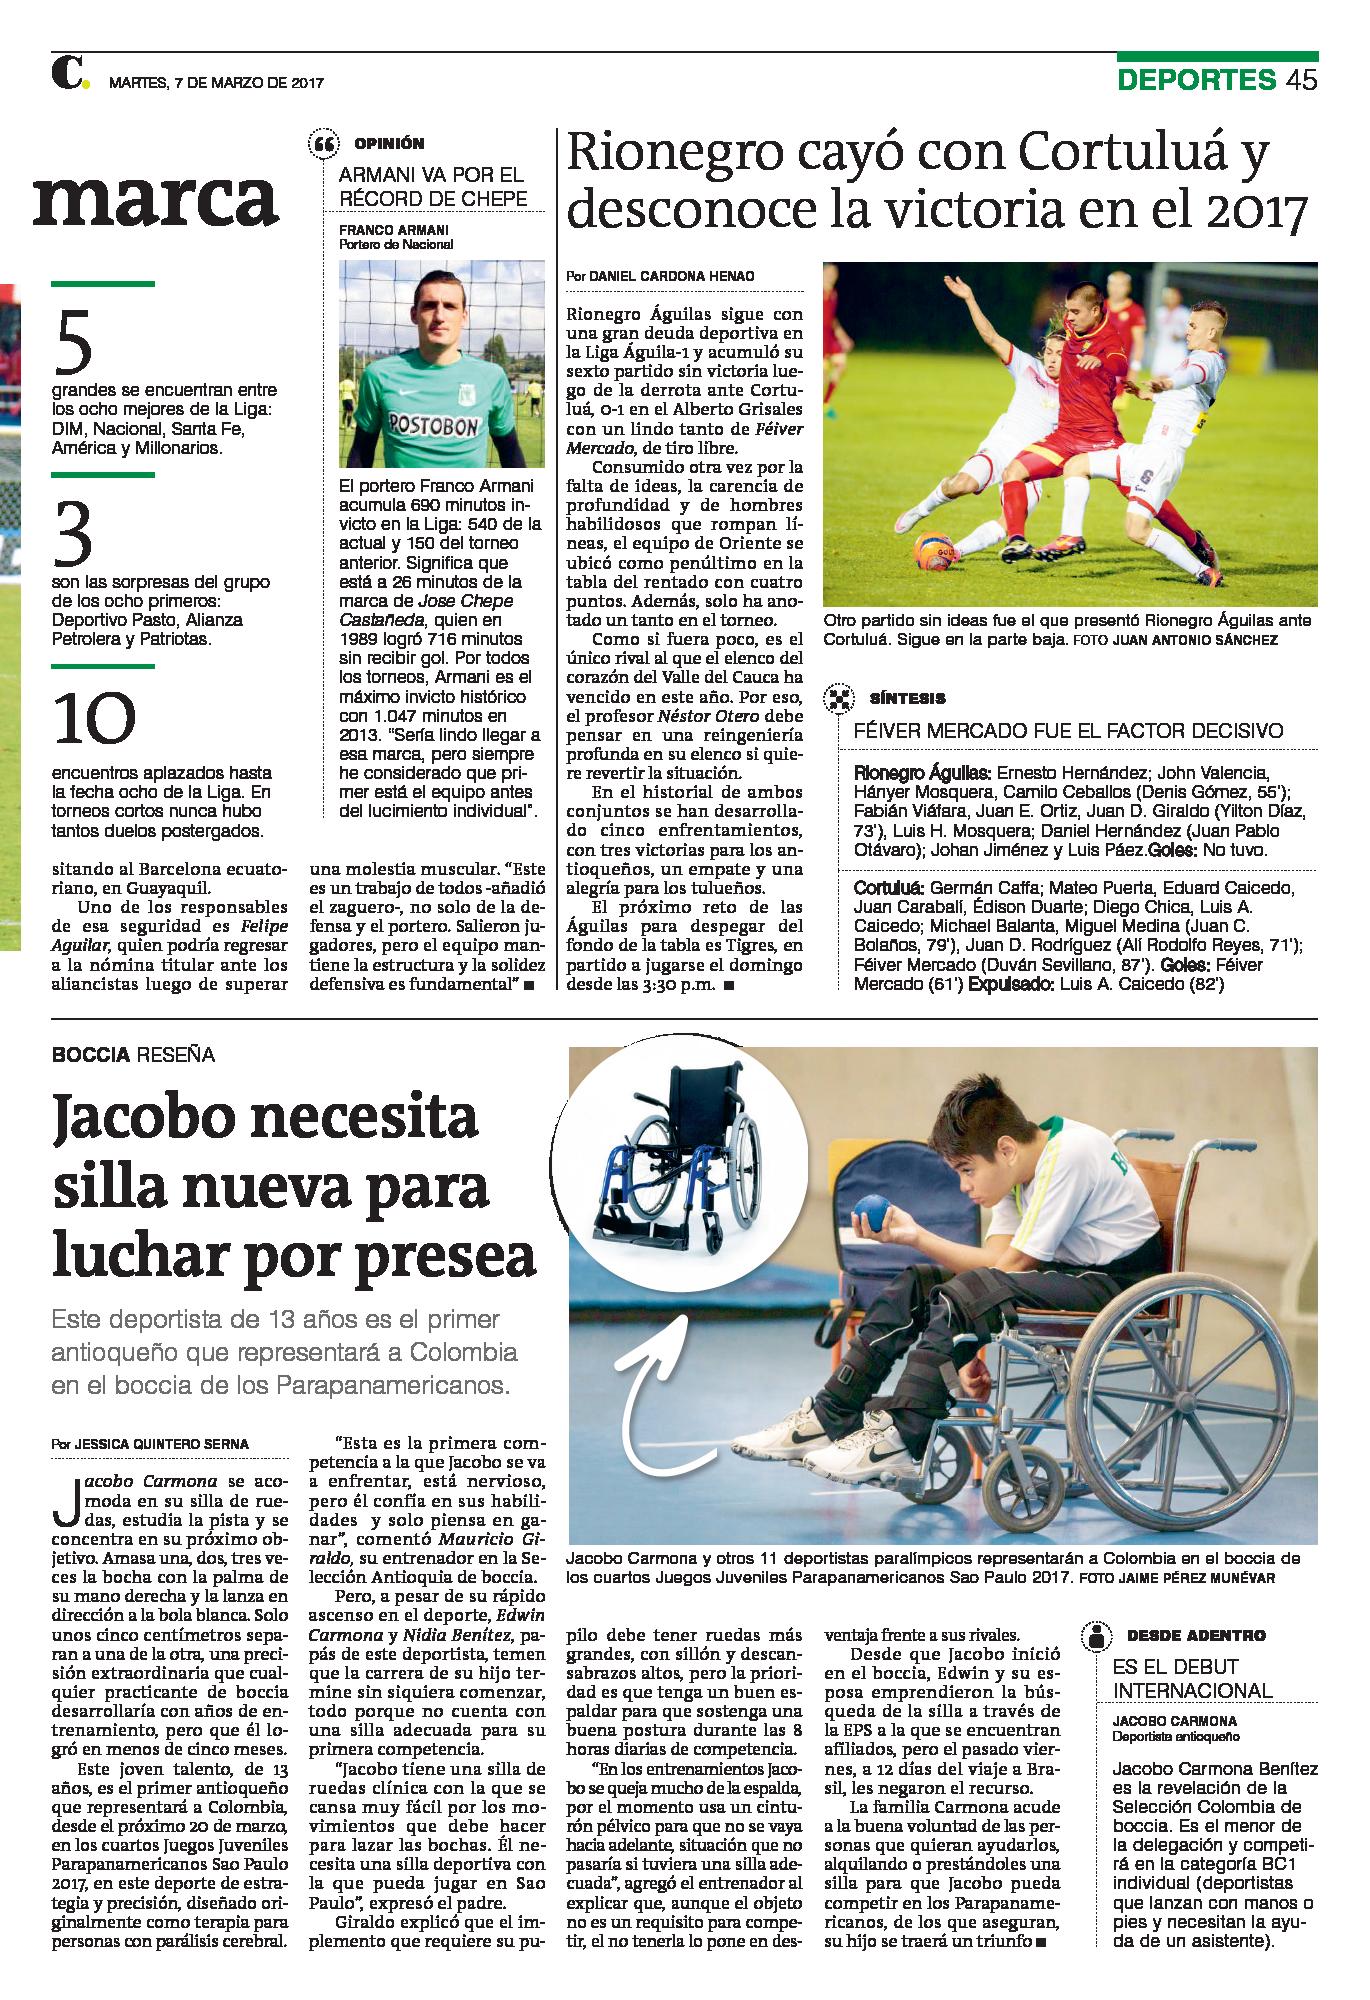 Deportista Jacobo Cardoma tiene silla de ruedas nueva gracias a El Colombiano